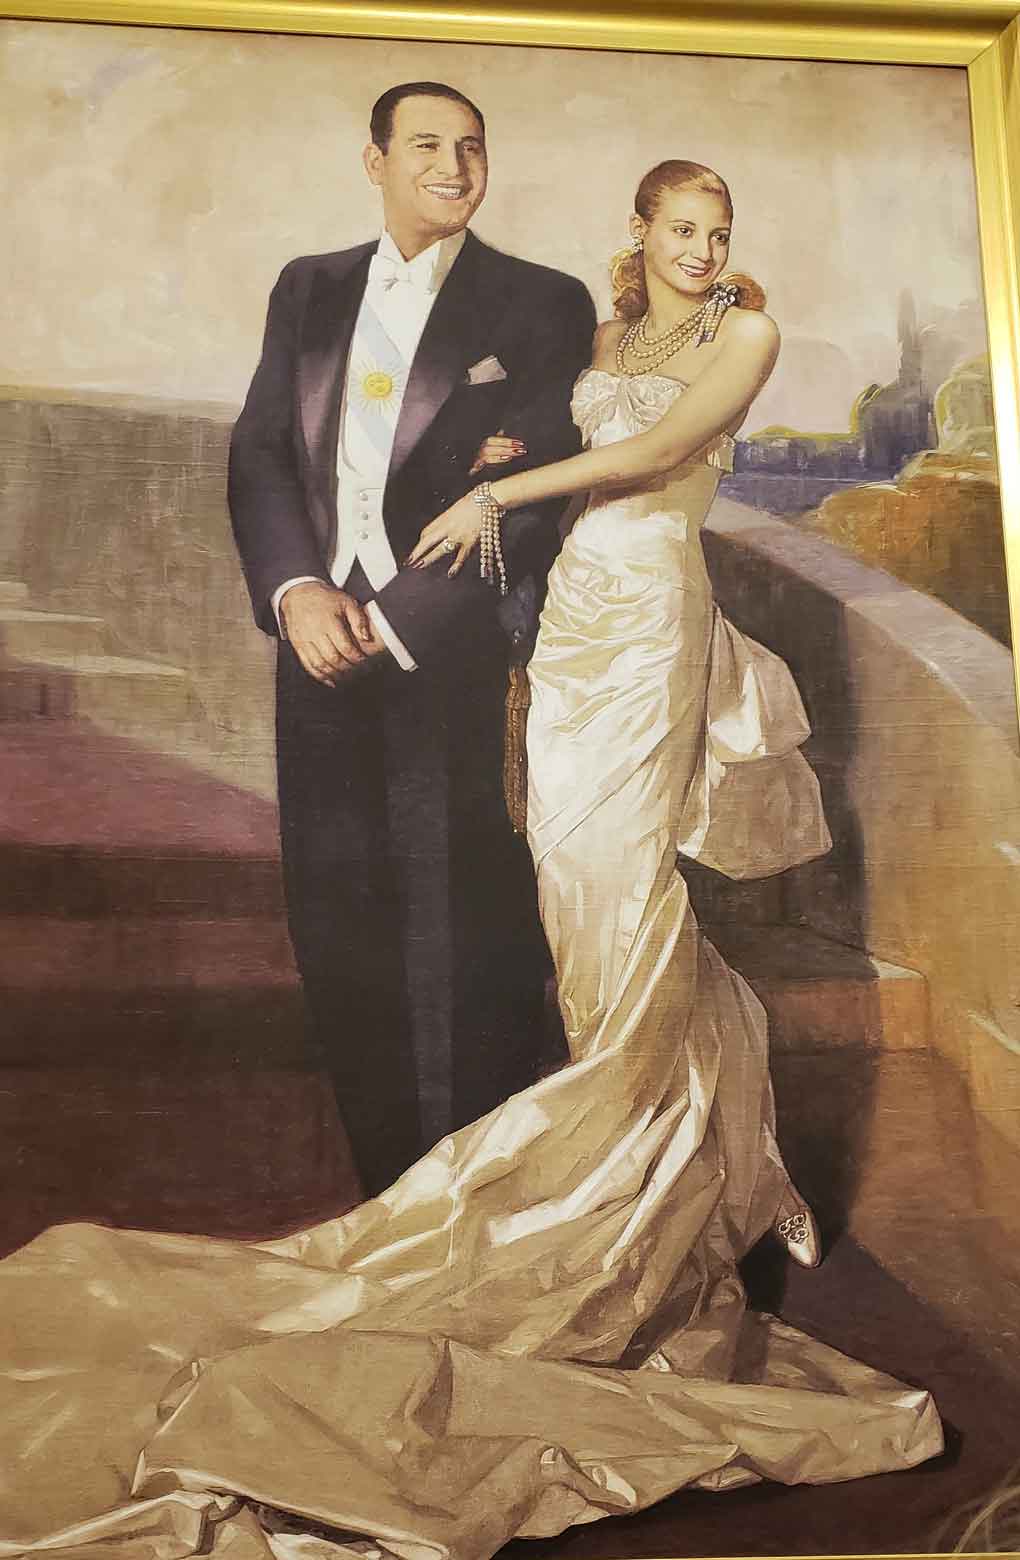 Roteiro Eva Perón: na Casa Rosada, sorriso em retrato oficial provocou polêmica na época (Foto: Marlyana Tavares)